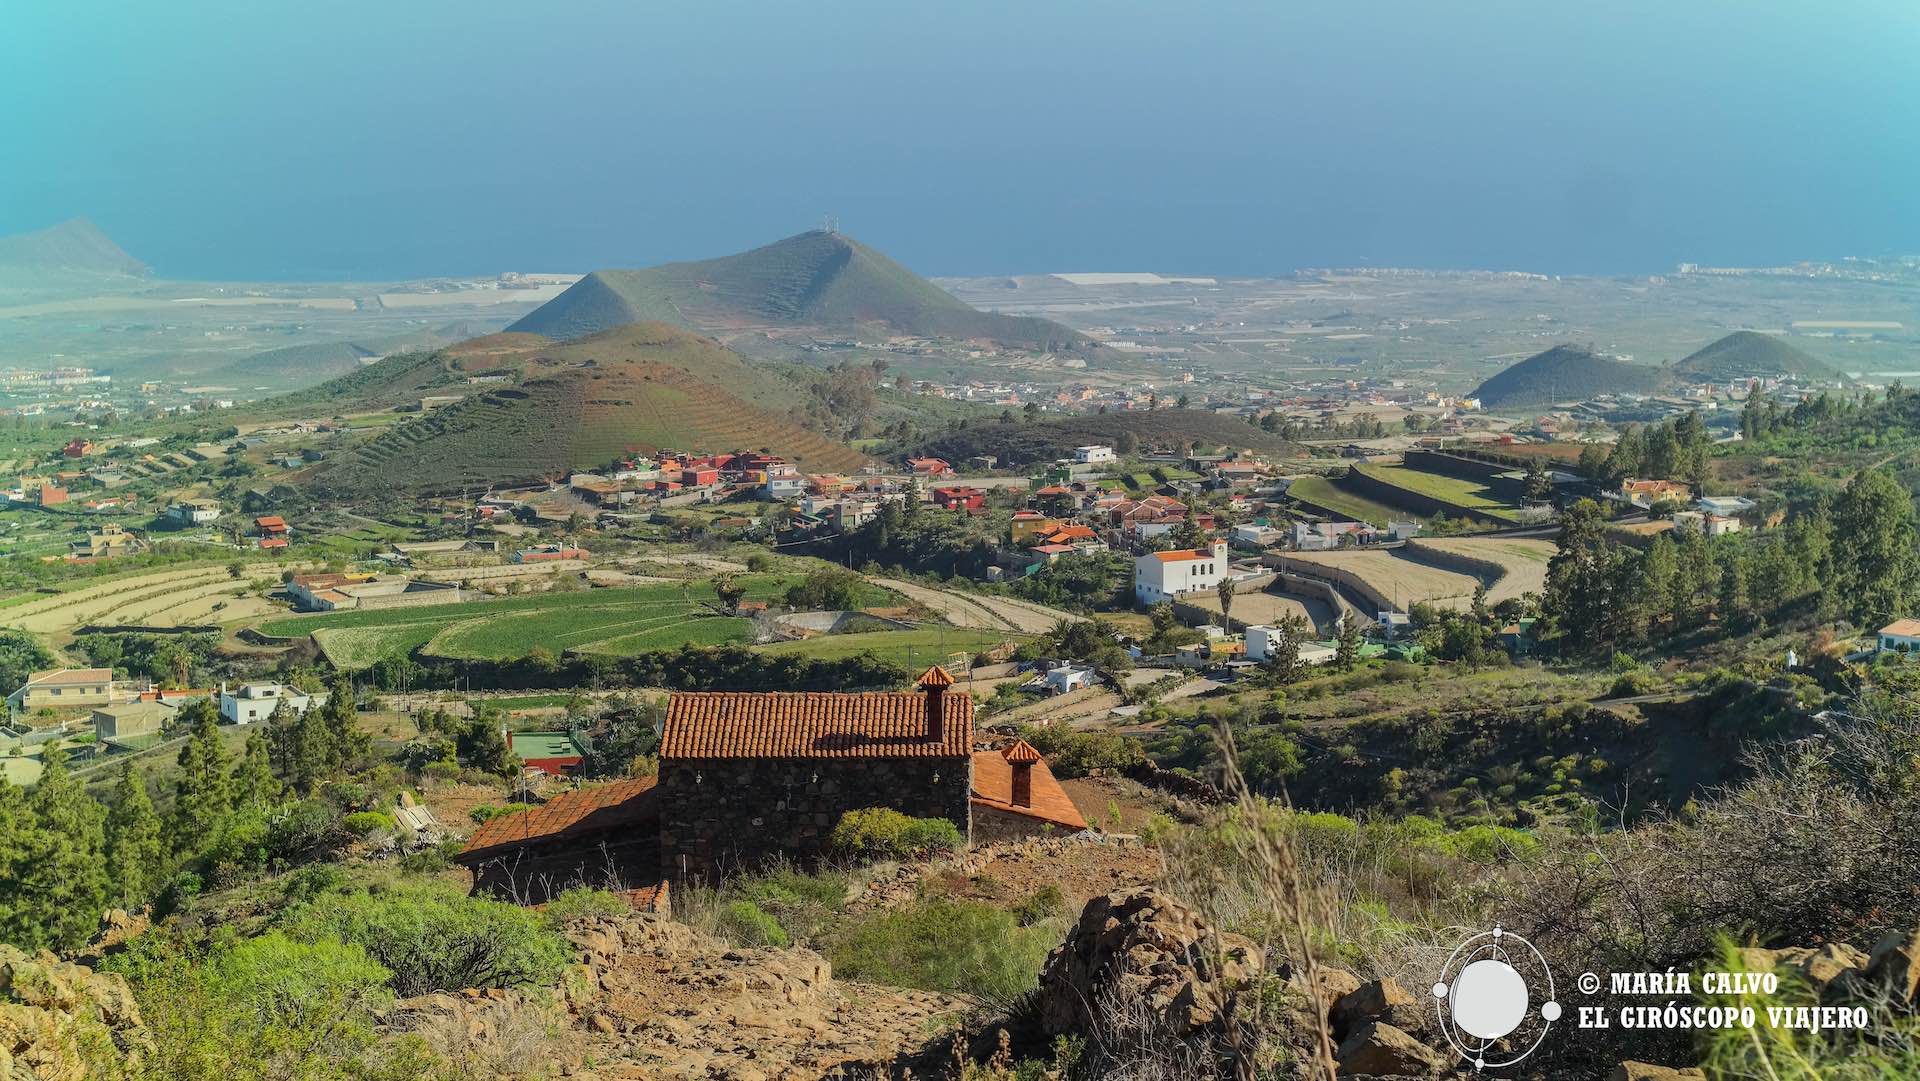 Asomándonos a un Tenerife diferente: las medianías del sur